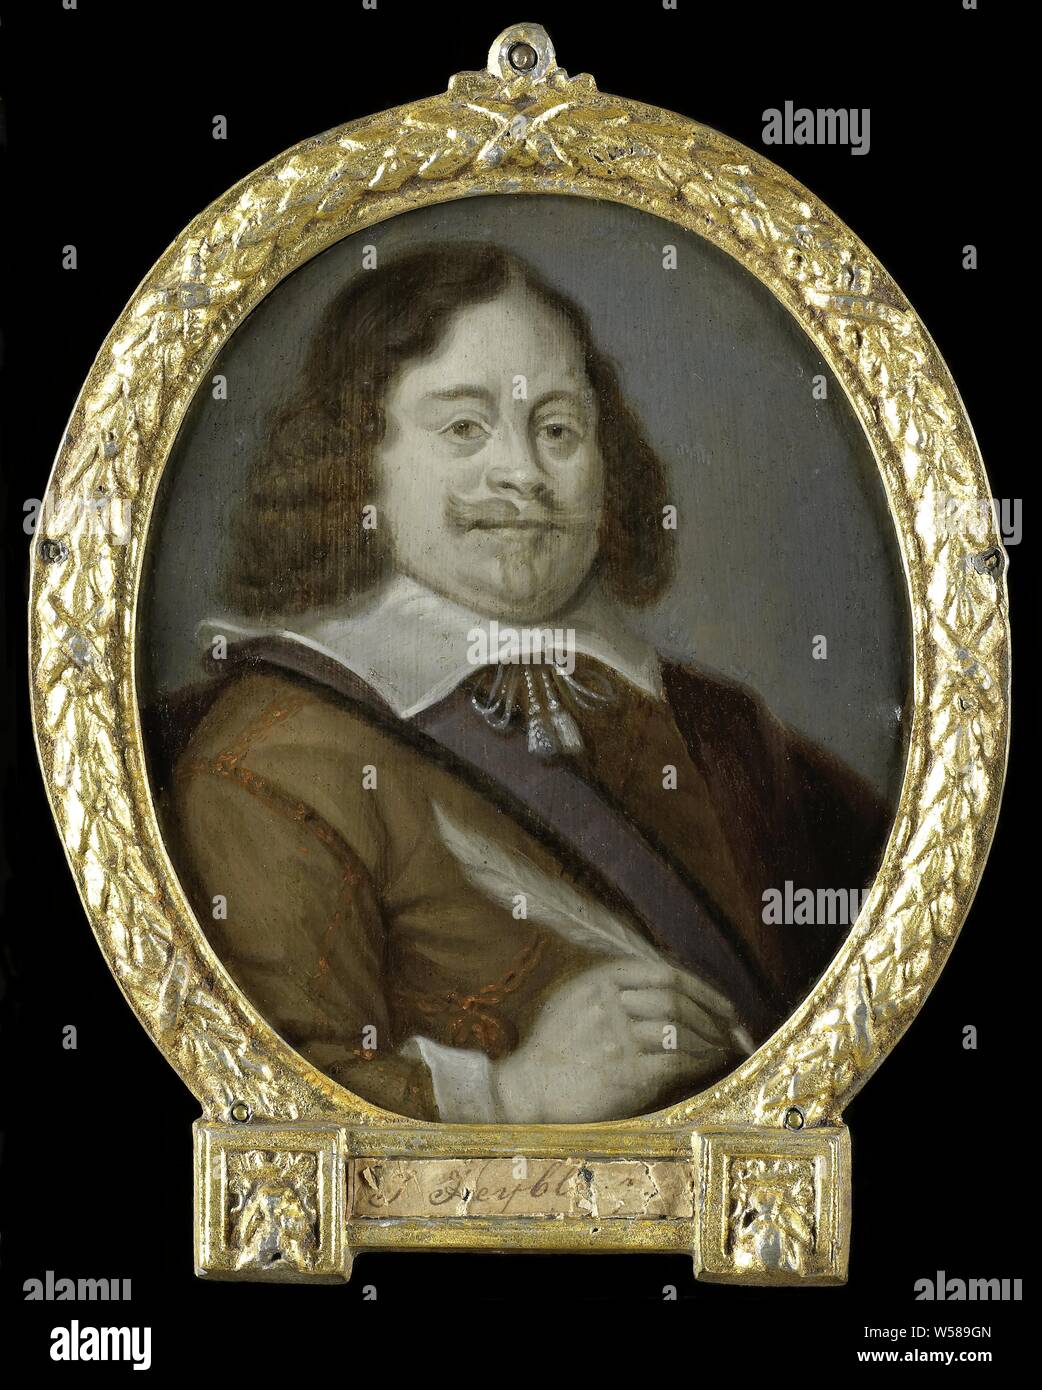 Ritratto di Joannes si raffredda (nato 1611), giurista, storico e poeta latino in Hoorn, Ritratto di Joannes si raffredda (nato 1611). Avvocato, storico e poeta latino in Hoorn. Busto in ovale, a destra, la penna nella mano destra. Parte di una collezione di ritratti dei poeti Olandese, ritratto di uno scrittore, scrittore, poeta, autore Joannes si raffredda, Arnoud Van Halen, 1700 - 1732, pittura a olio (vernice), h cm 11 × W 9.5 cm h 41.2 cm × W 47,4 cm × d 1,6 cm Foto Stock